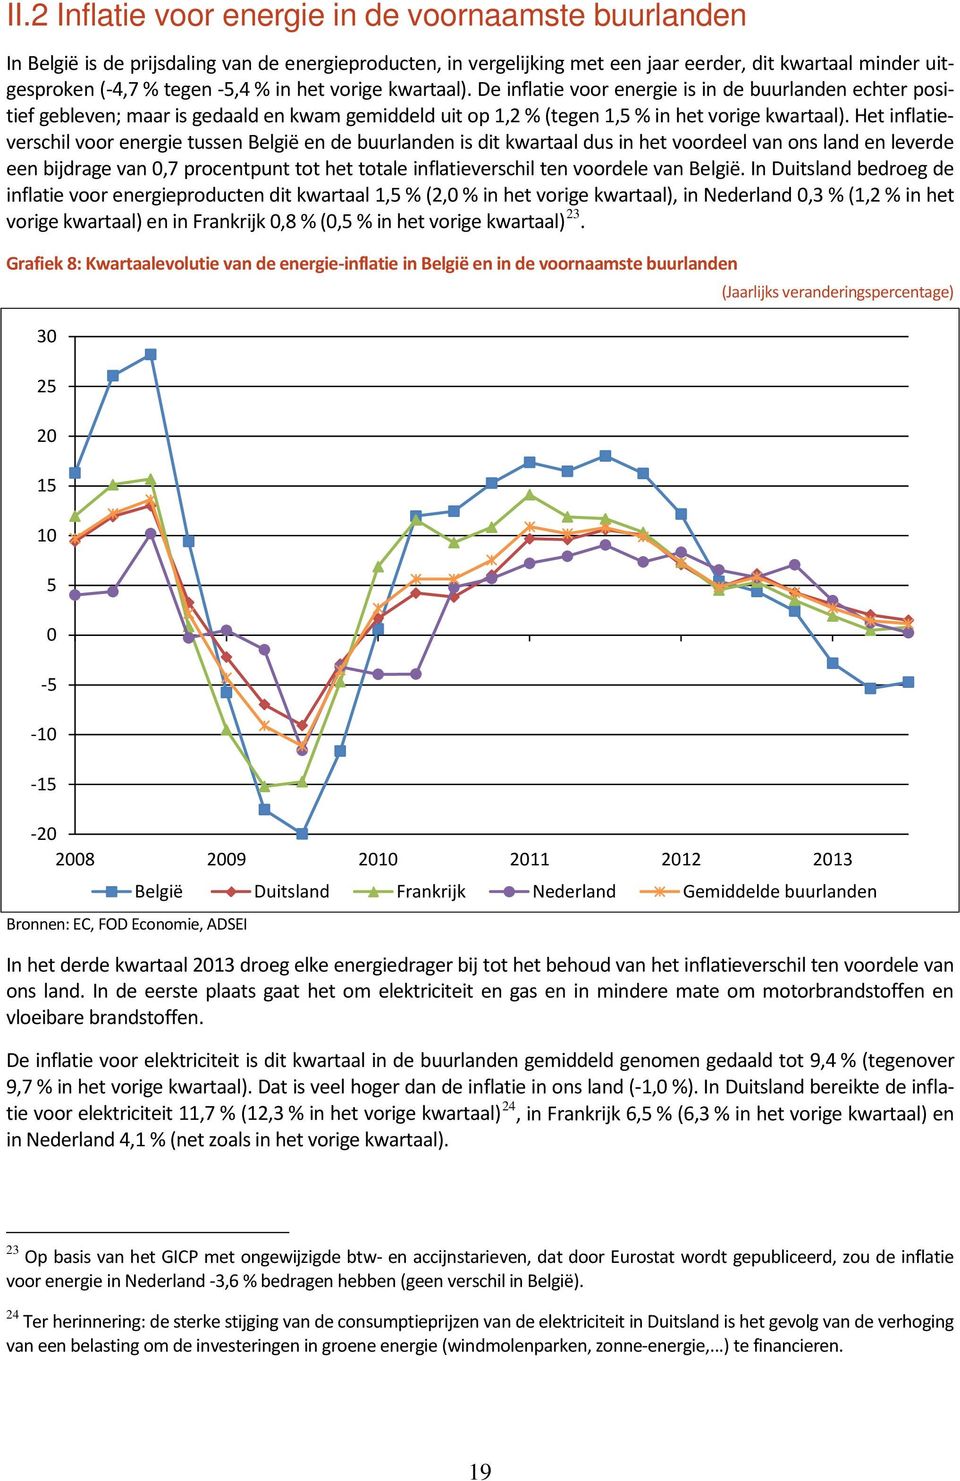 Het inflatieverschil voor energie tussen België en de buurlanden is dit kwartaal dus in het voordeel van ons land en leverde een bijdrage van 0,7 procentpunt tot het totale inflatieverschil ten